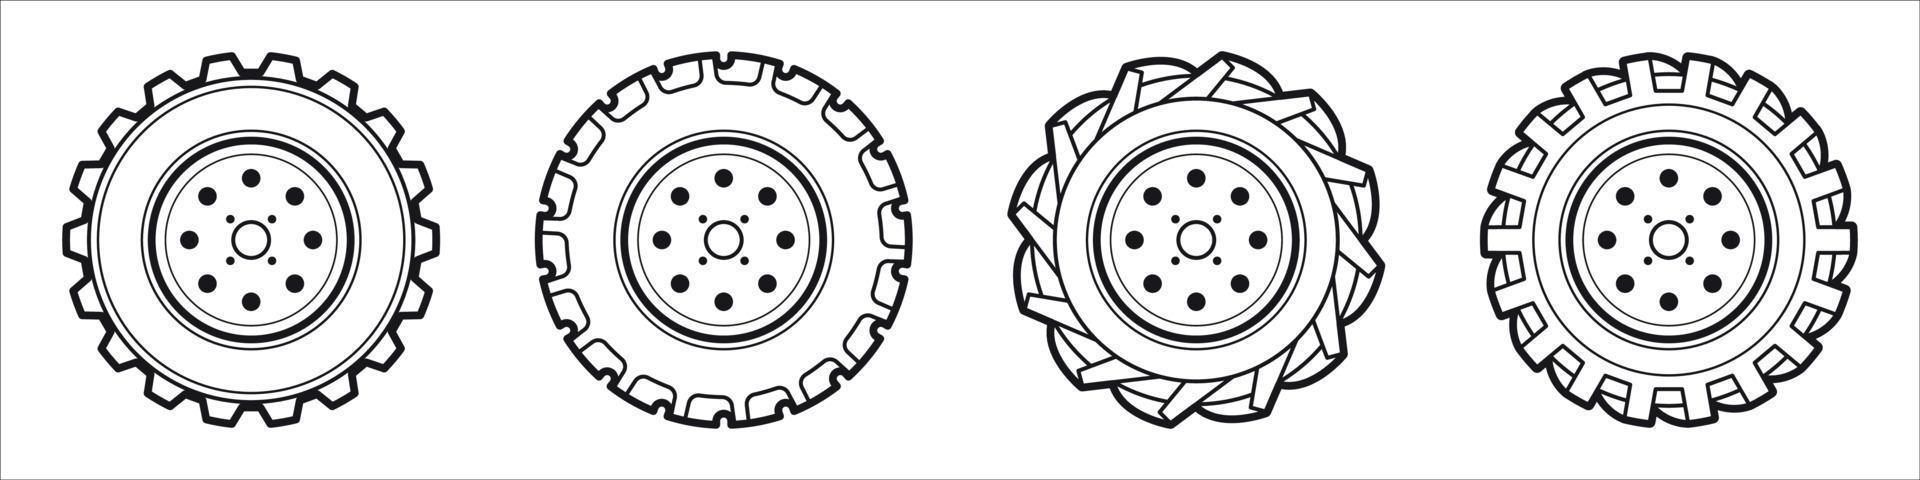 conjunto de pneu de borracha isolado, pneu de carro, roda de caminhão vetor